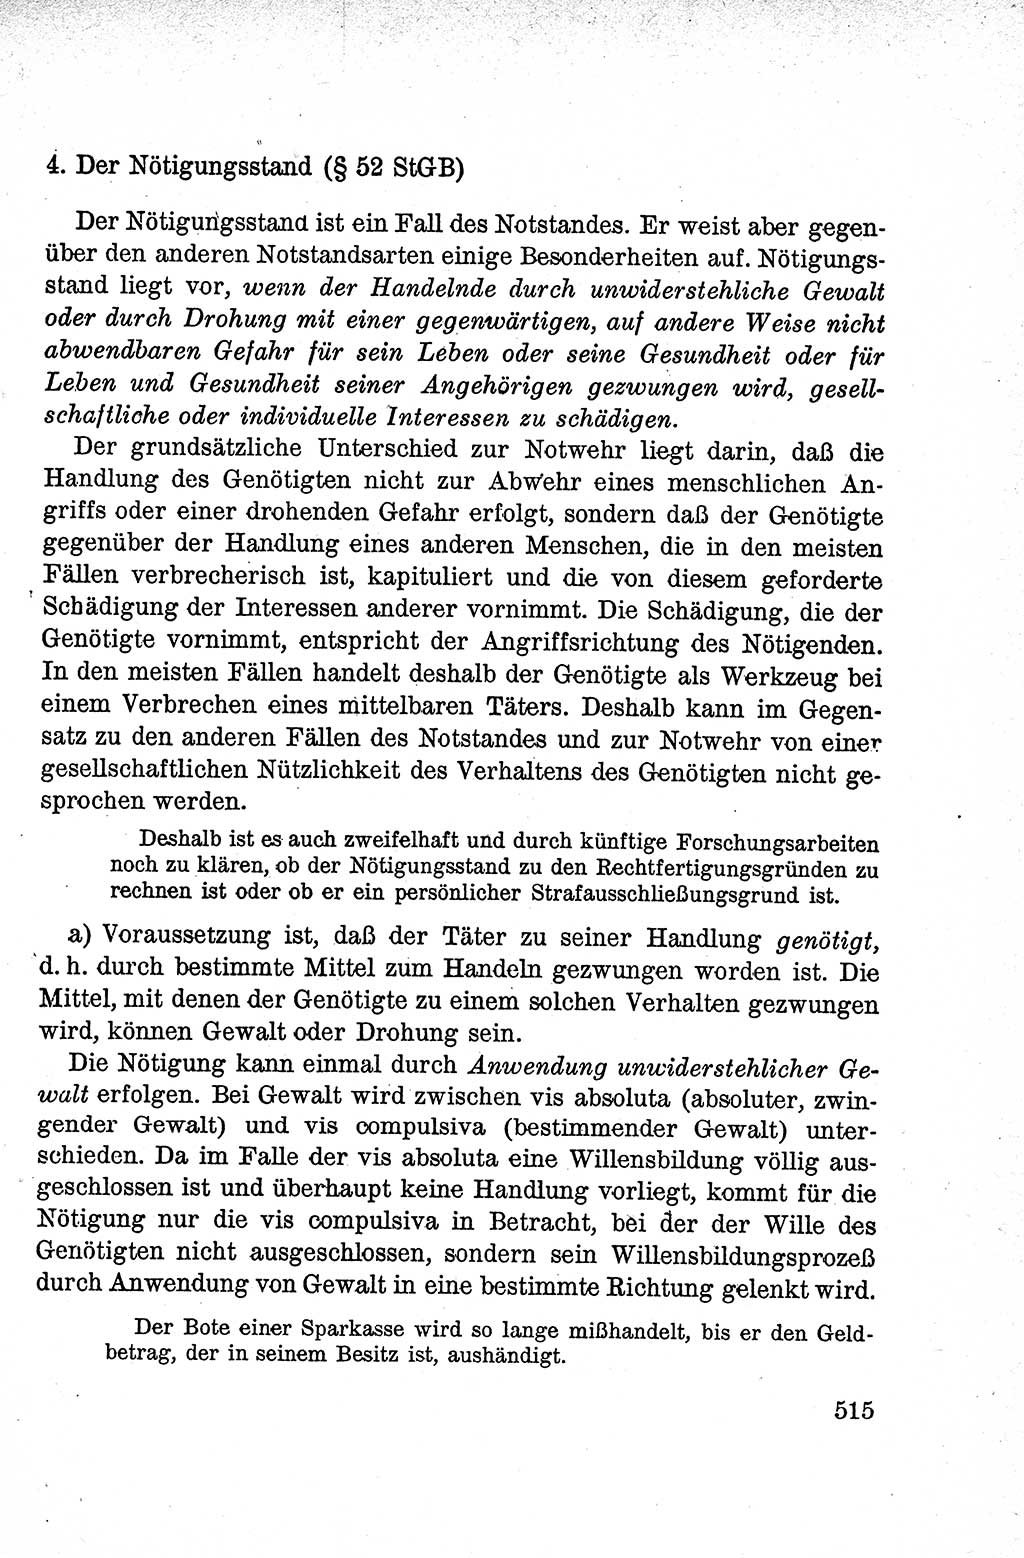 Lehrbuch des Strafrechts der Deutschen Demokratischen Republik (DDR), Allgemeiner Teil 1959, Seite 515 (Lb. Strafr. DDR AT 1959, S. 515)